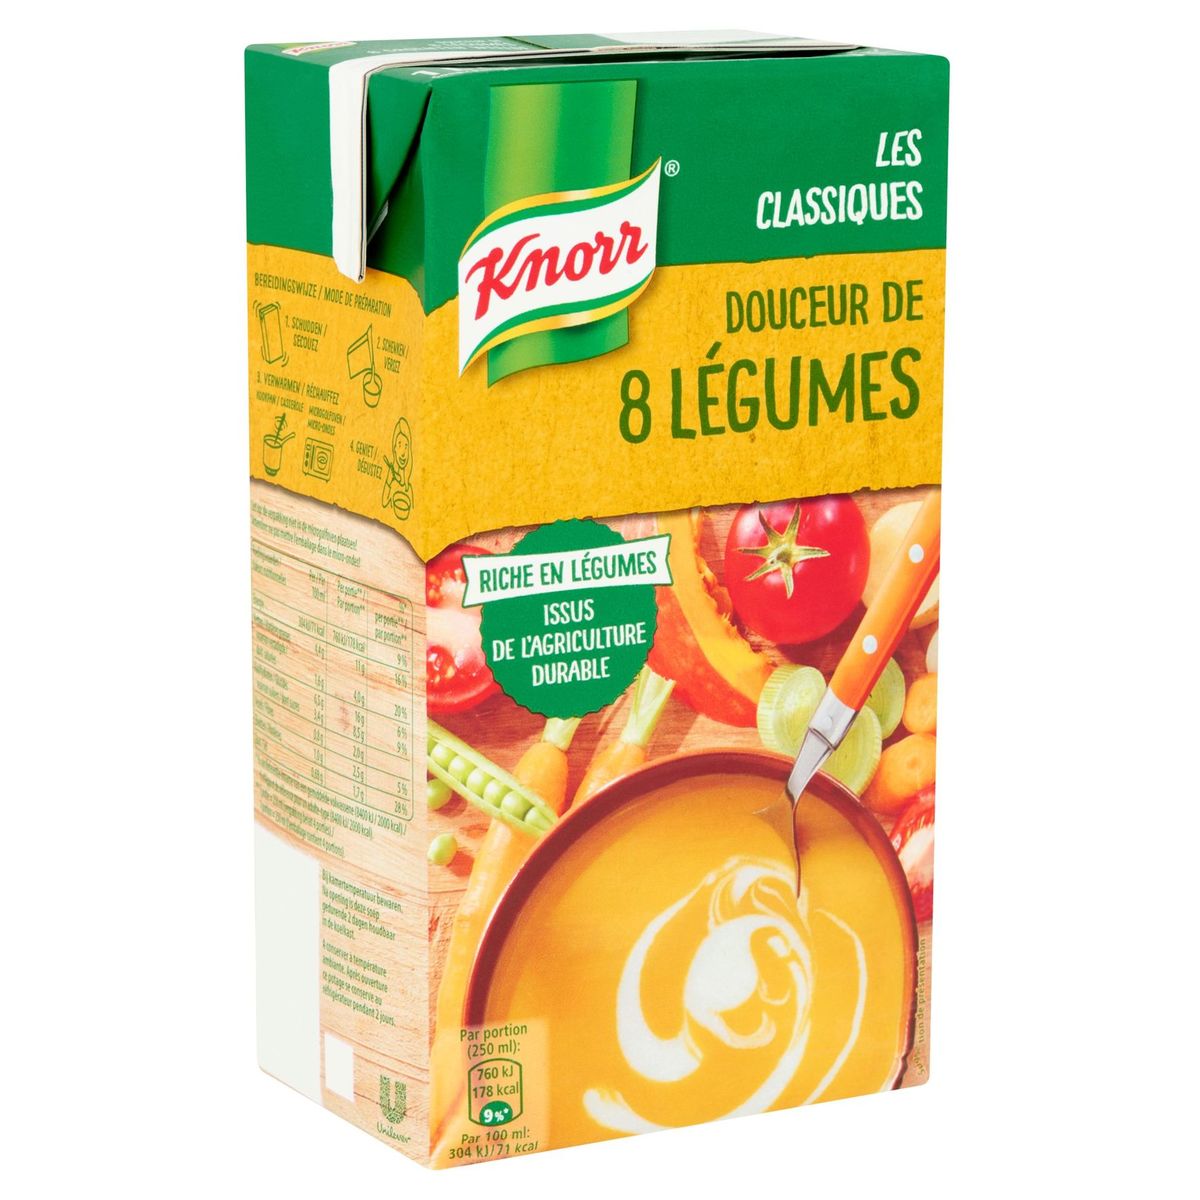 Knorr Classics Tetra Soupe Douceur de 8 Légumes 1 L